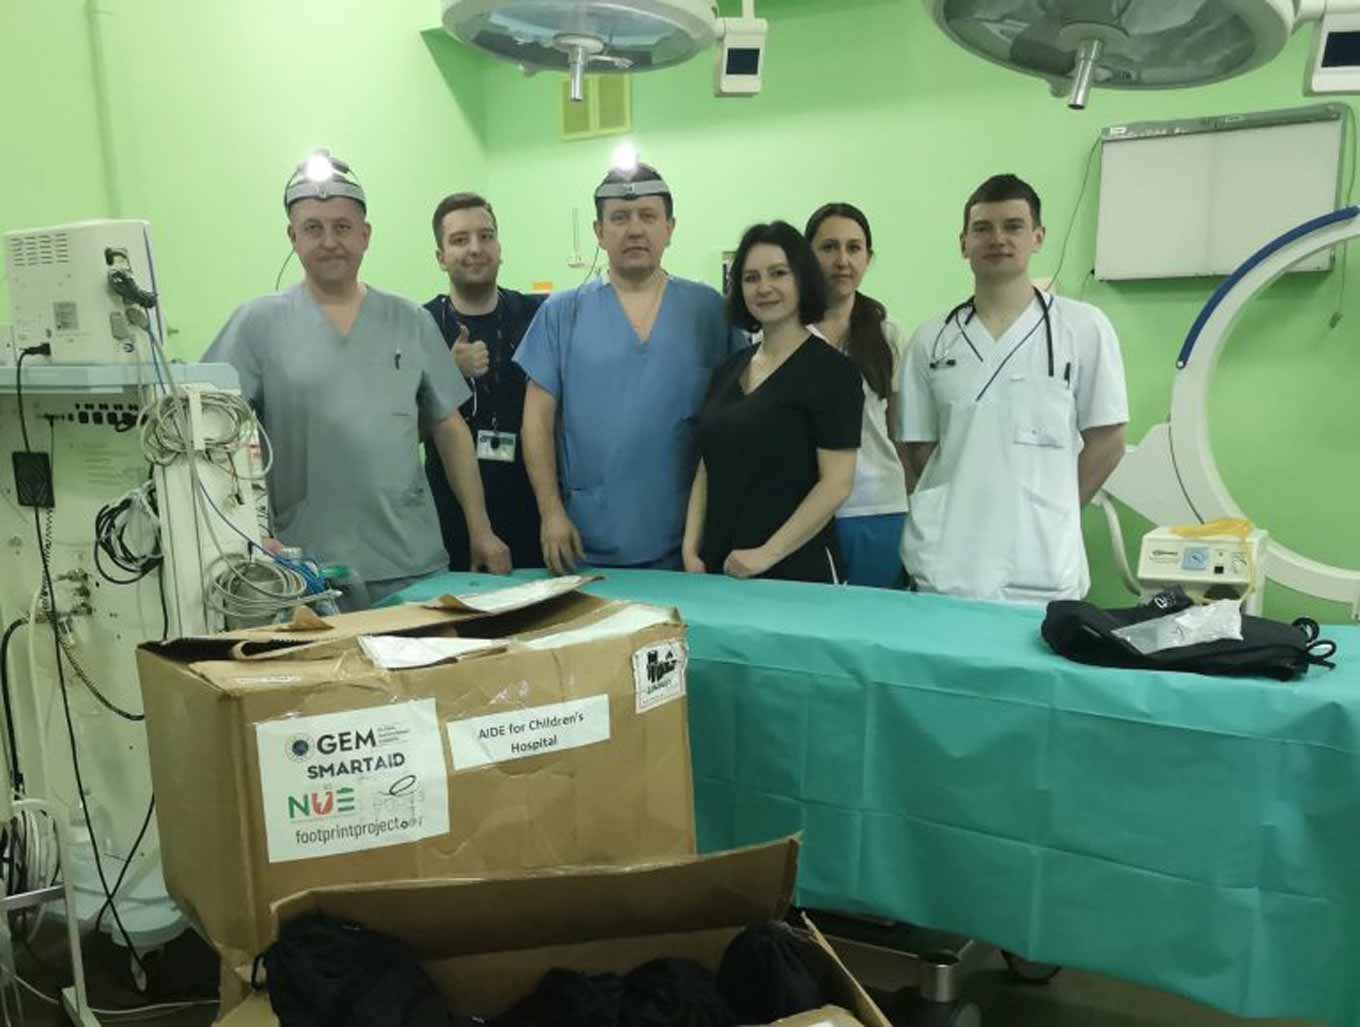 Een team van artsen en verpleegkundigen in een ziekenhuis poseert voor de camera